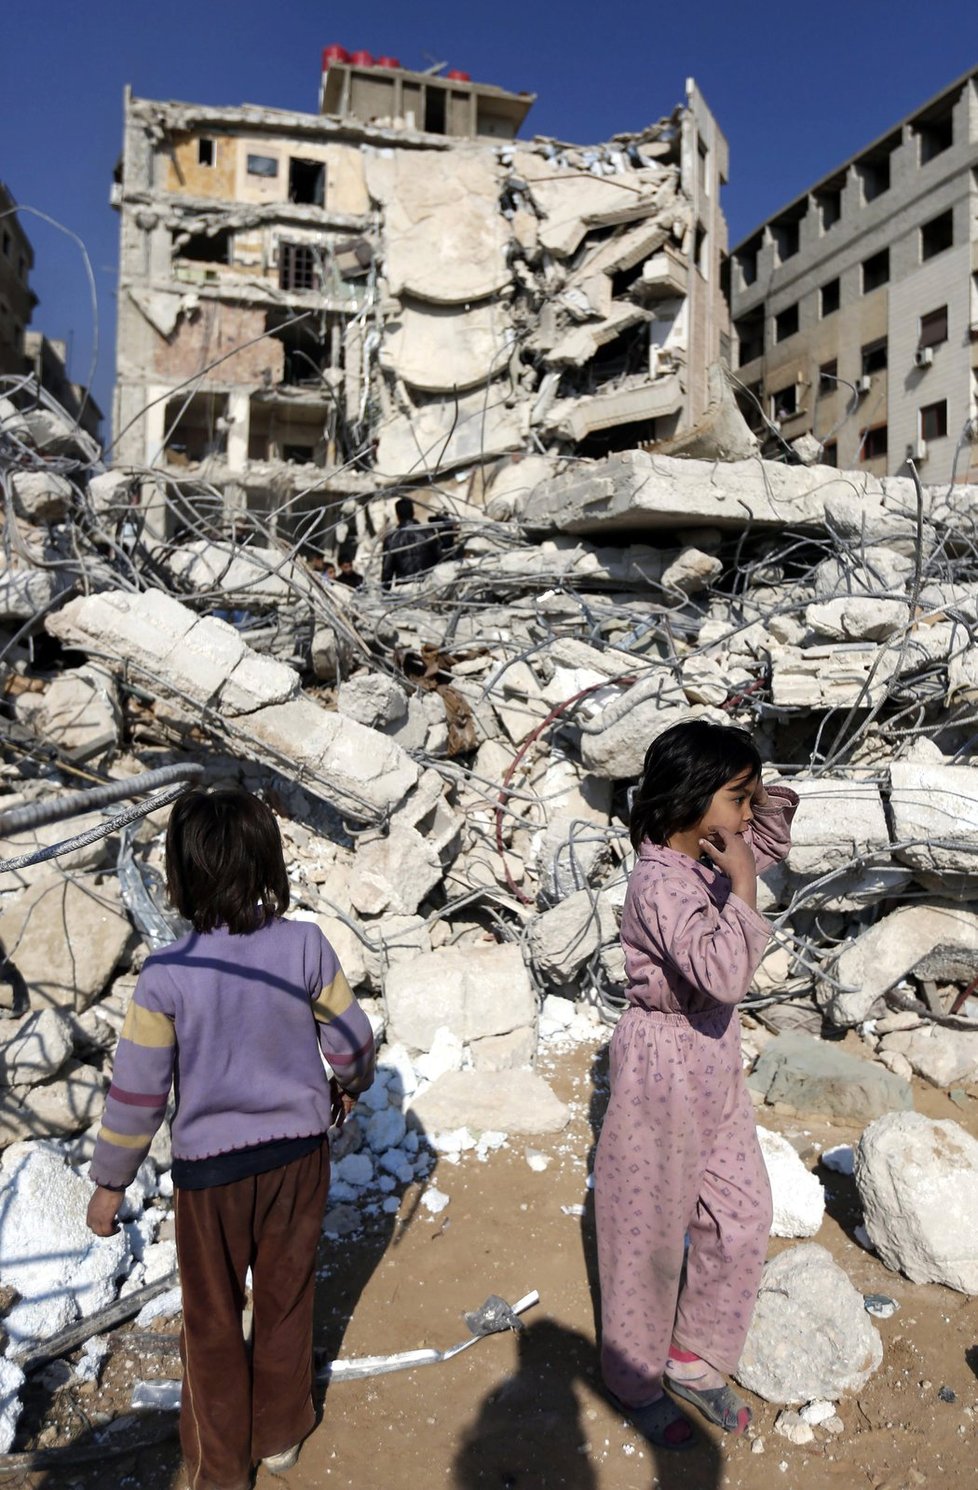 V Sýrii pátým rokem trvá válečný stav, země je v troskách.